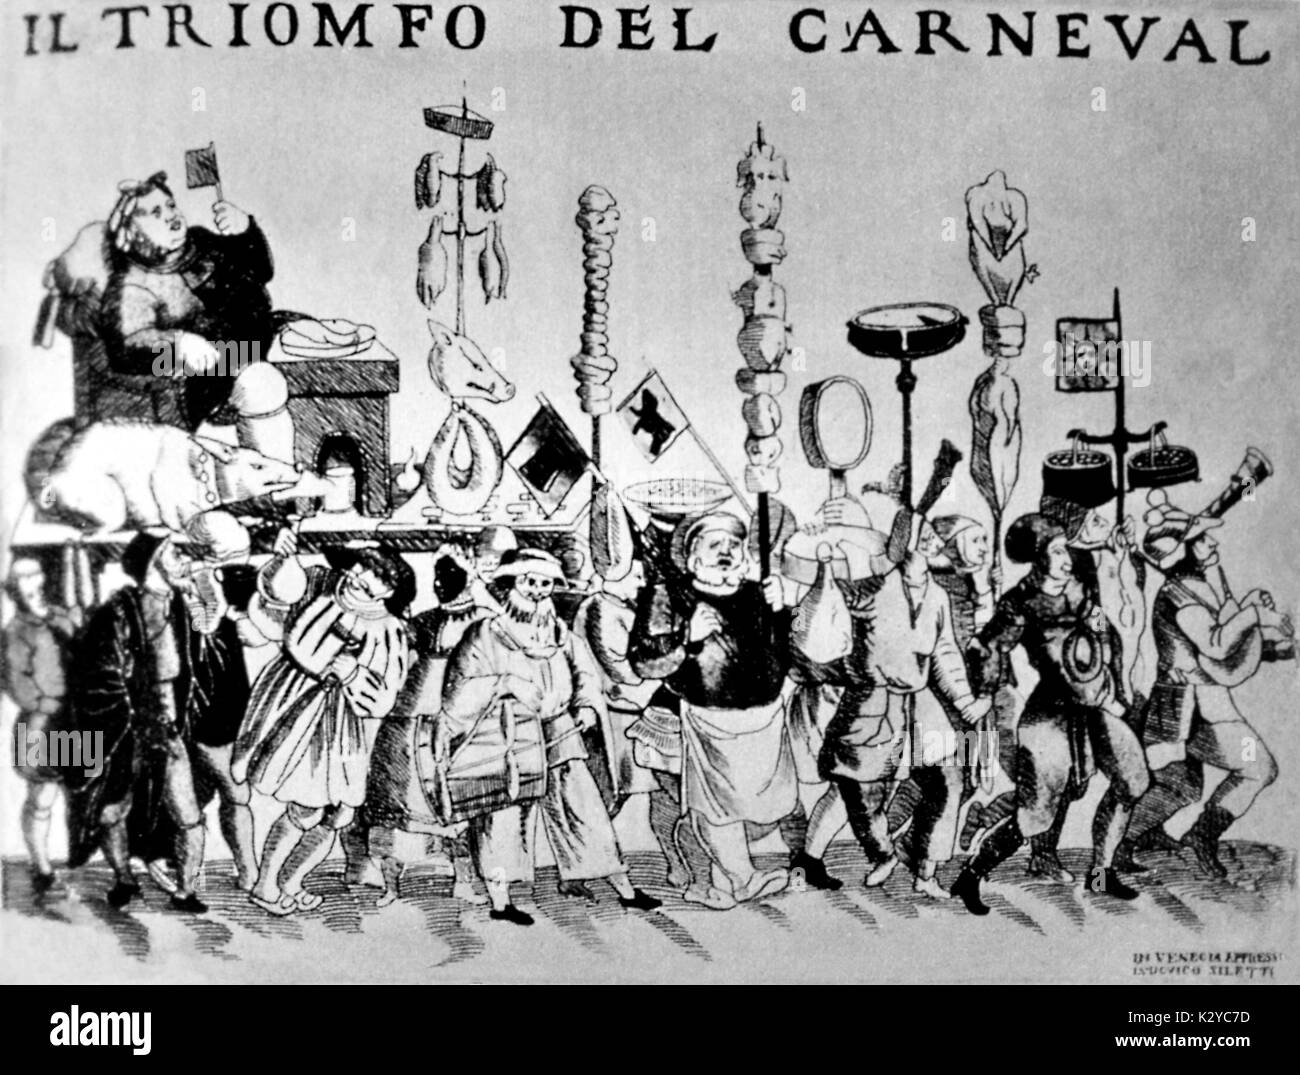 Venise - carnaval vénitien - Brochure Il Trionfo del Carnaval (le triomphe du carnaval). Banque D'Images